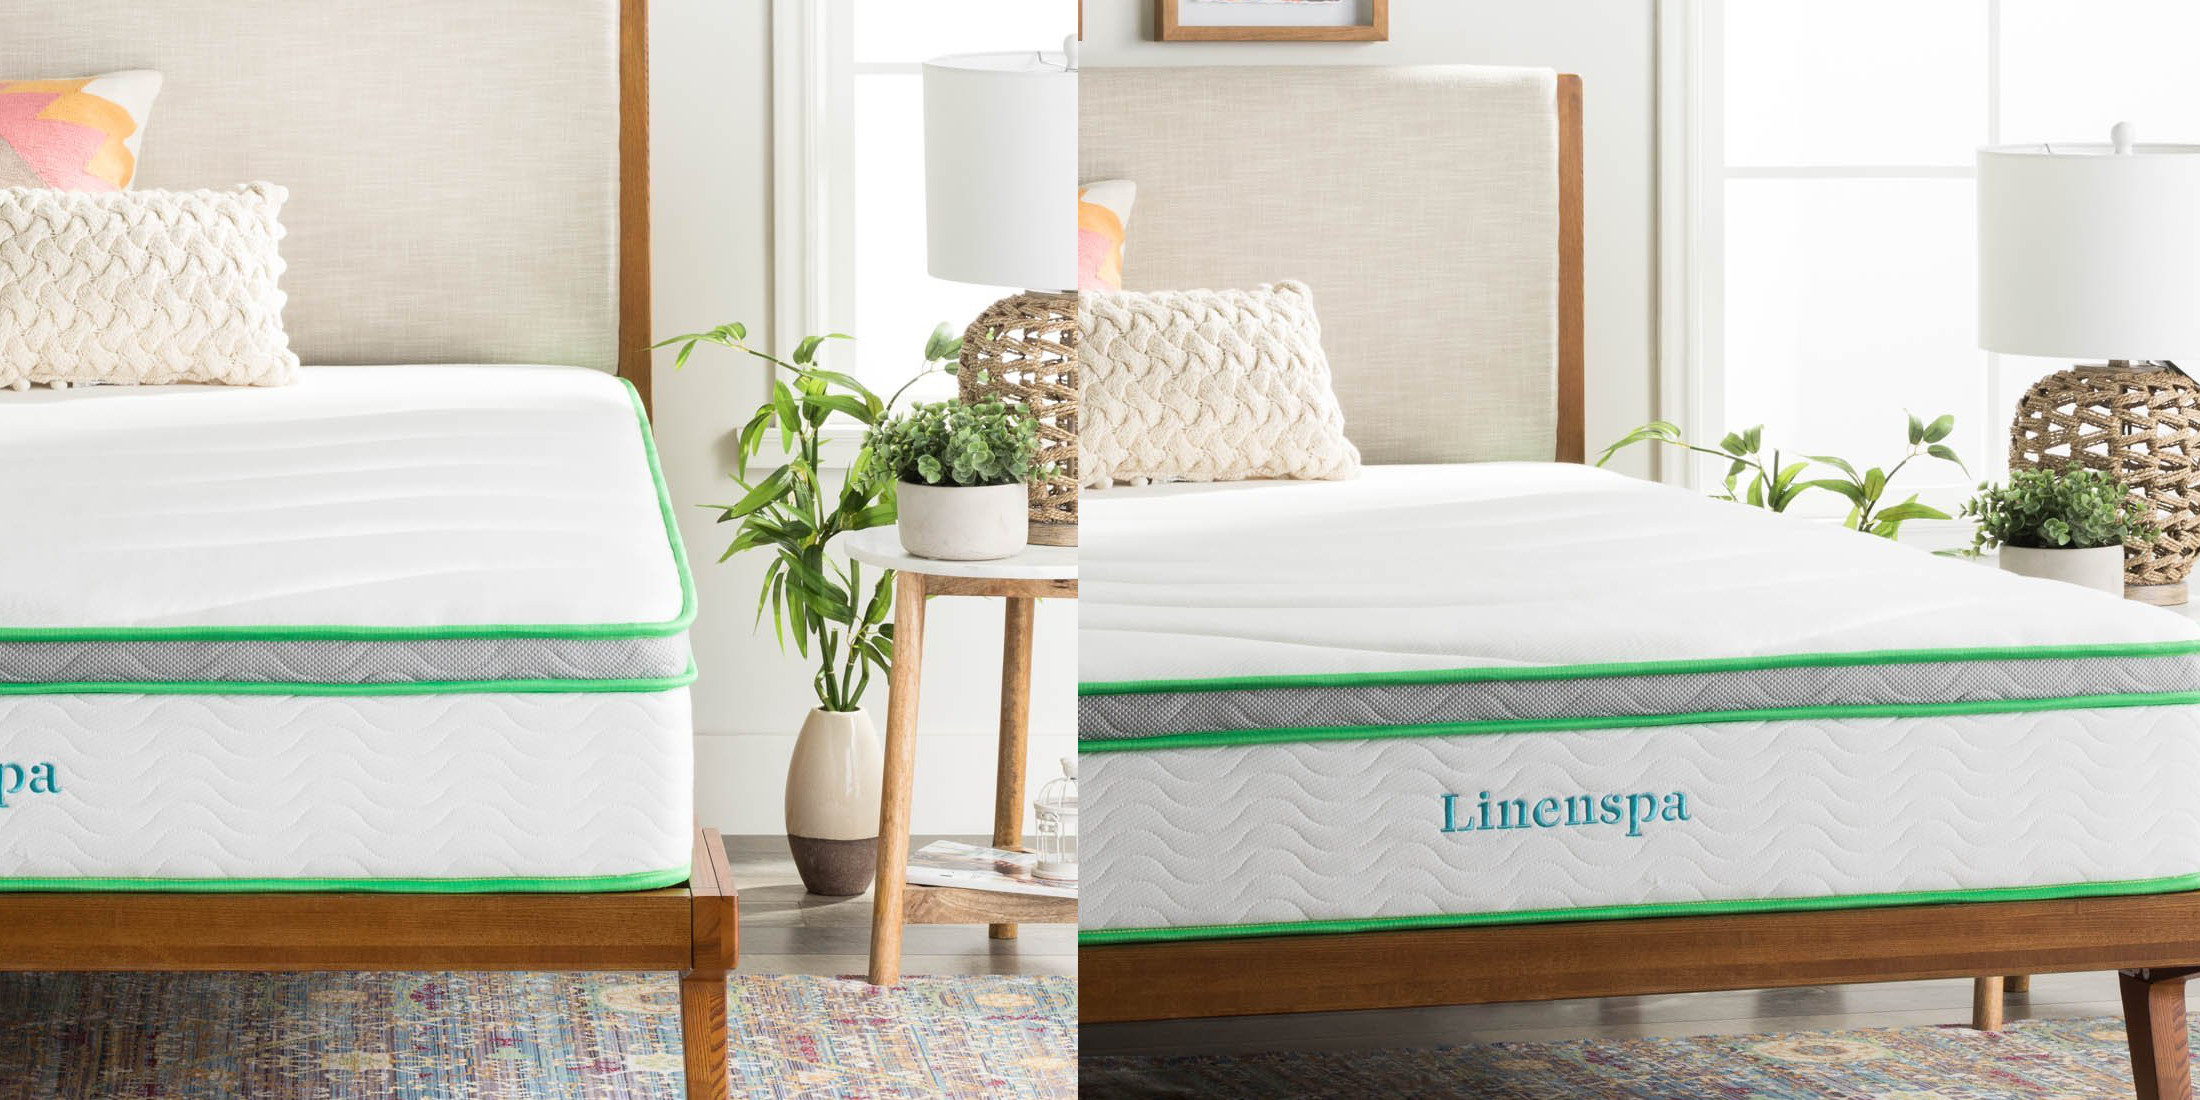 linenspa 10 inch vs alswell mattress